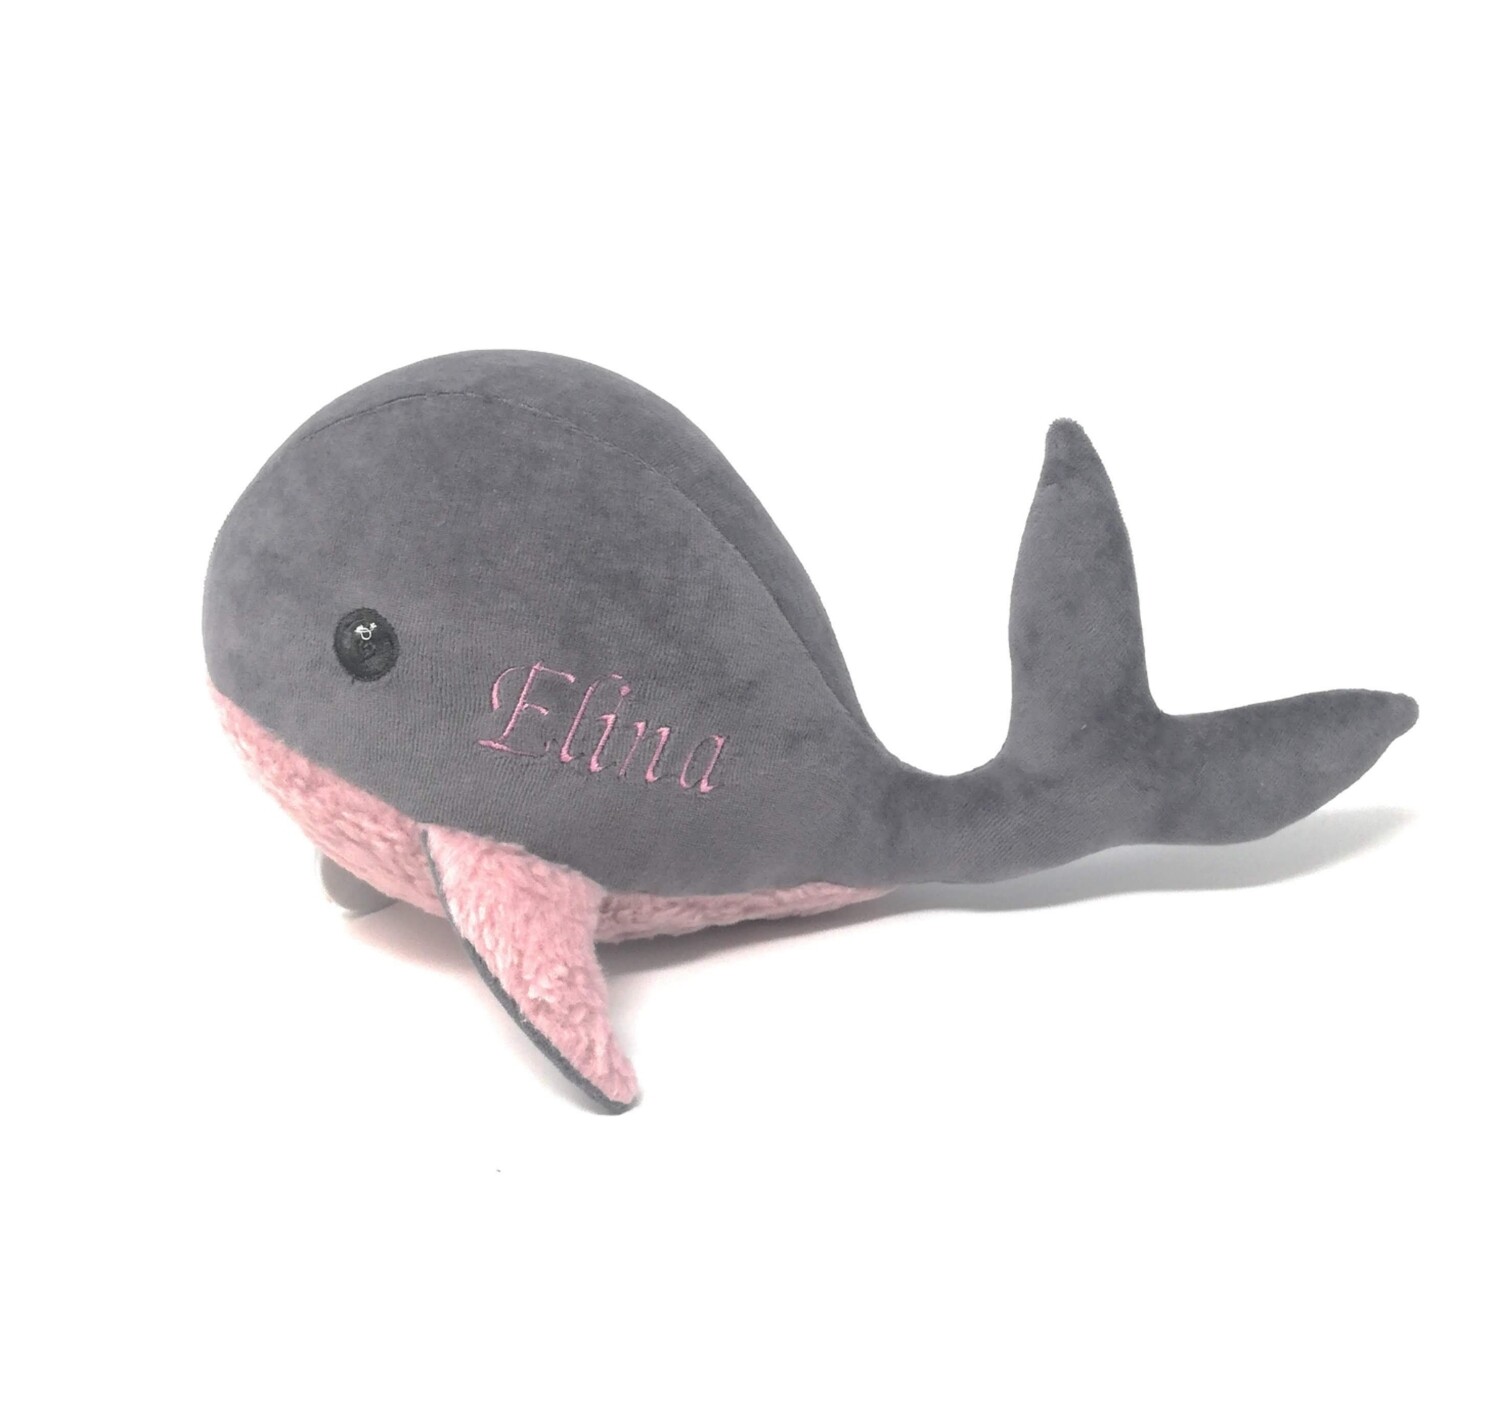 Kuscheltier Wal für Spieluhr helles rosa-grau: mit Namen und Wunschmelodie, aus Öko Teddy Plüsch, mit austauschbarer Spieluhr. Optional mit Geheimtasche/Reißverschluss